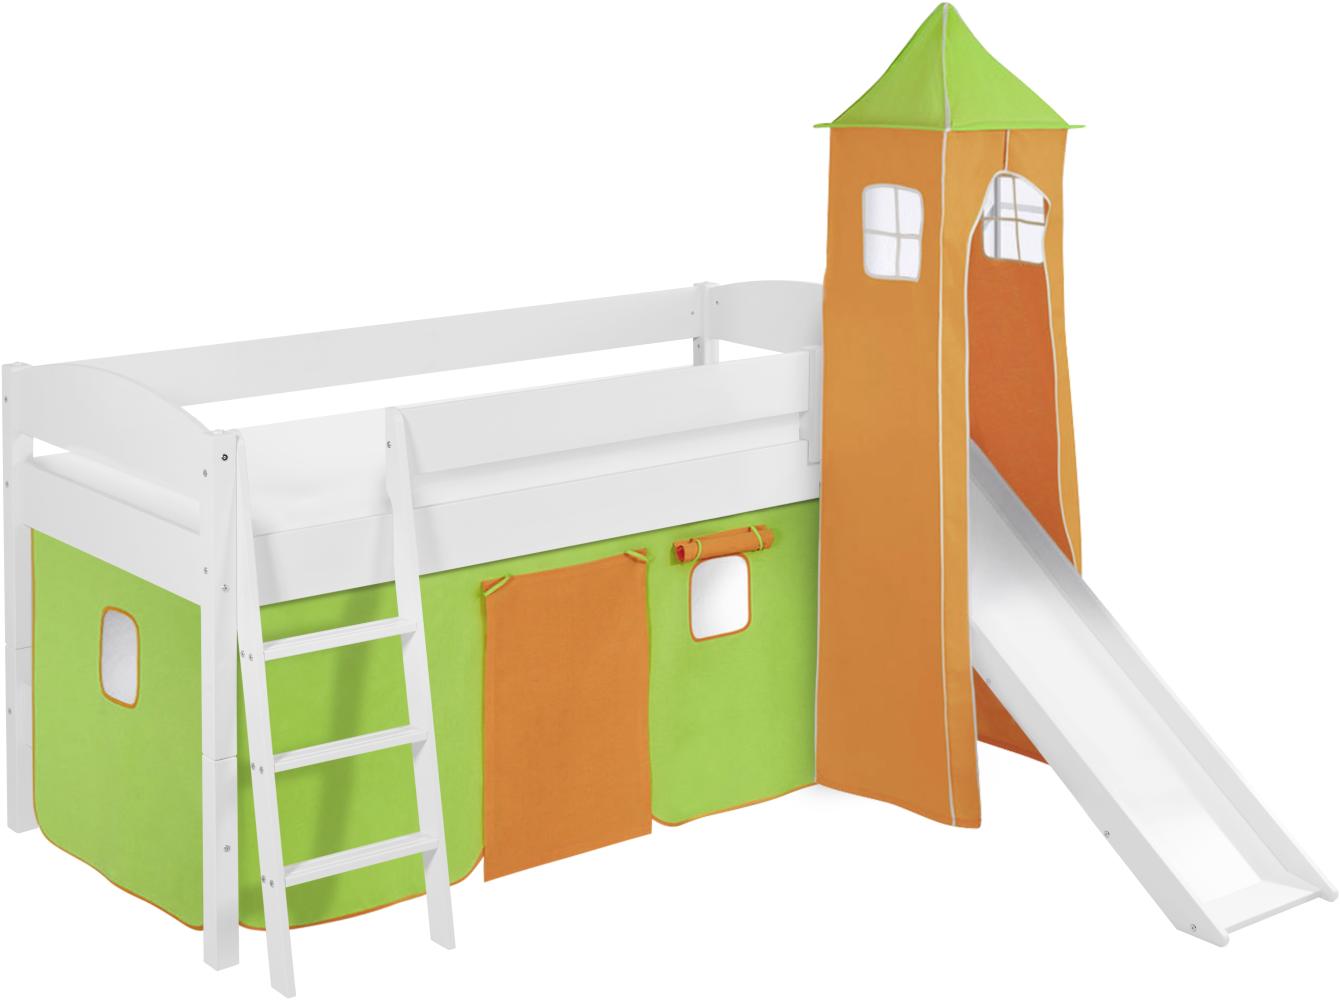 Lilokids 'Ida 4105' Spielbett 90 x 200 cm, Grün Orange, Kiefer massiv, mit Turm, Rutsche und Vorhang Bild 1